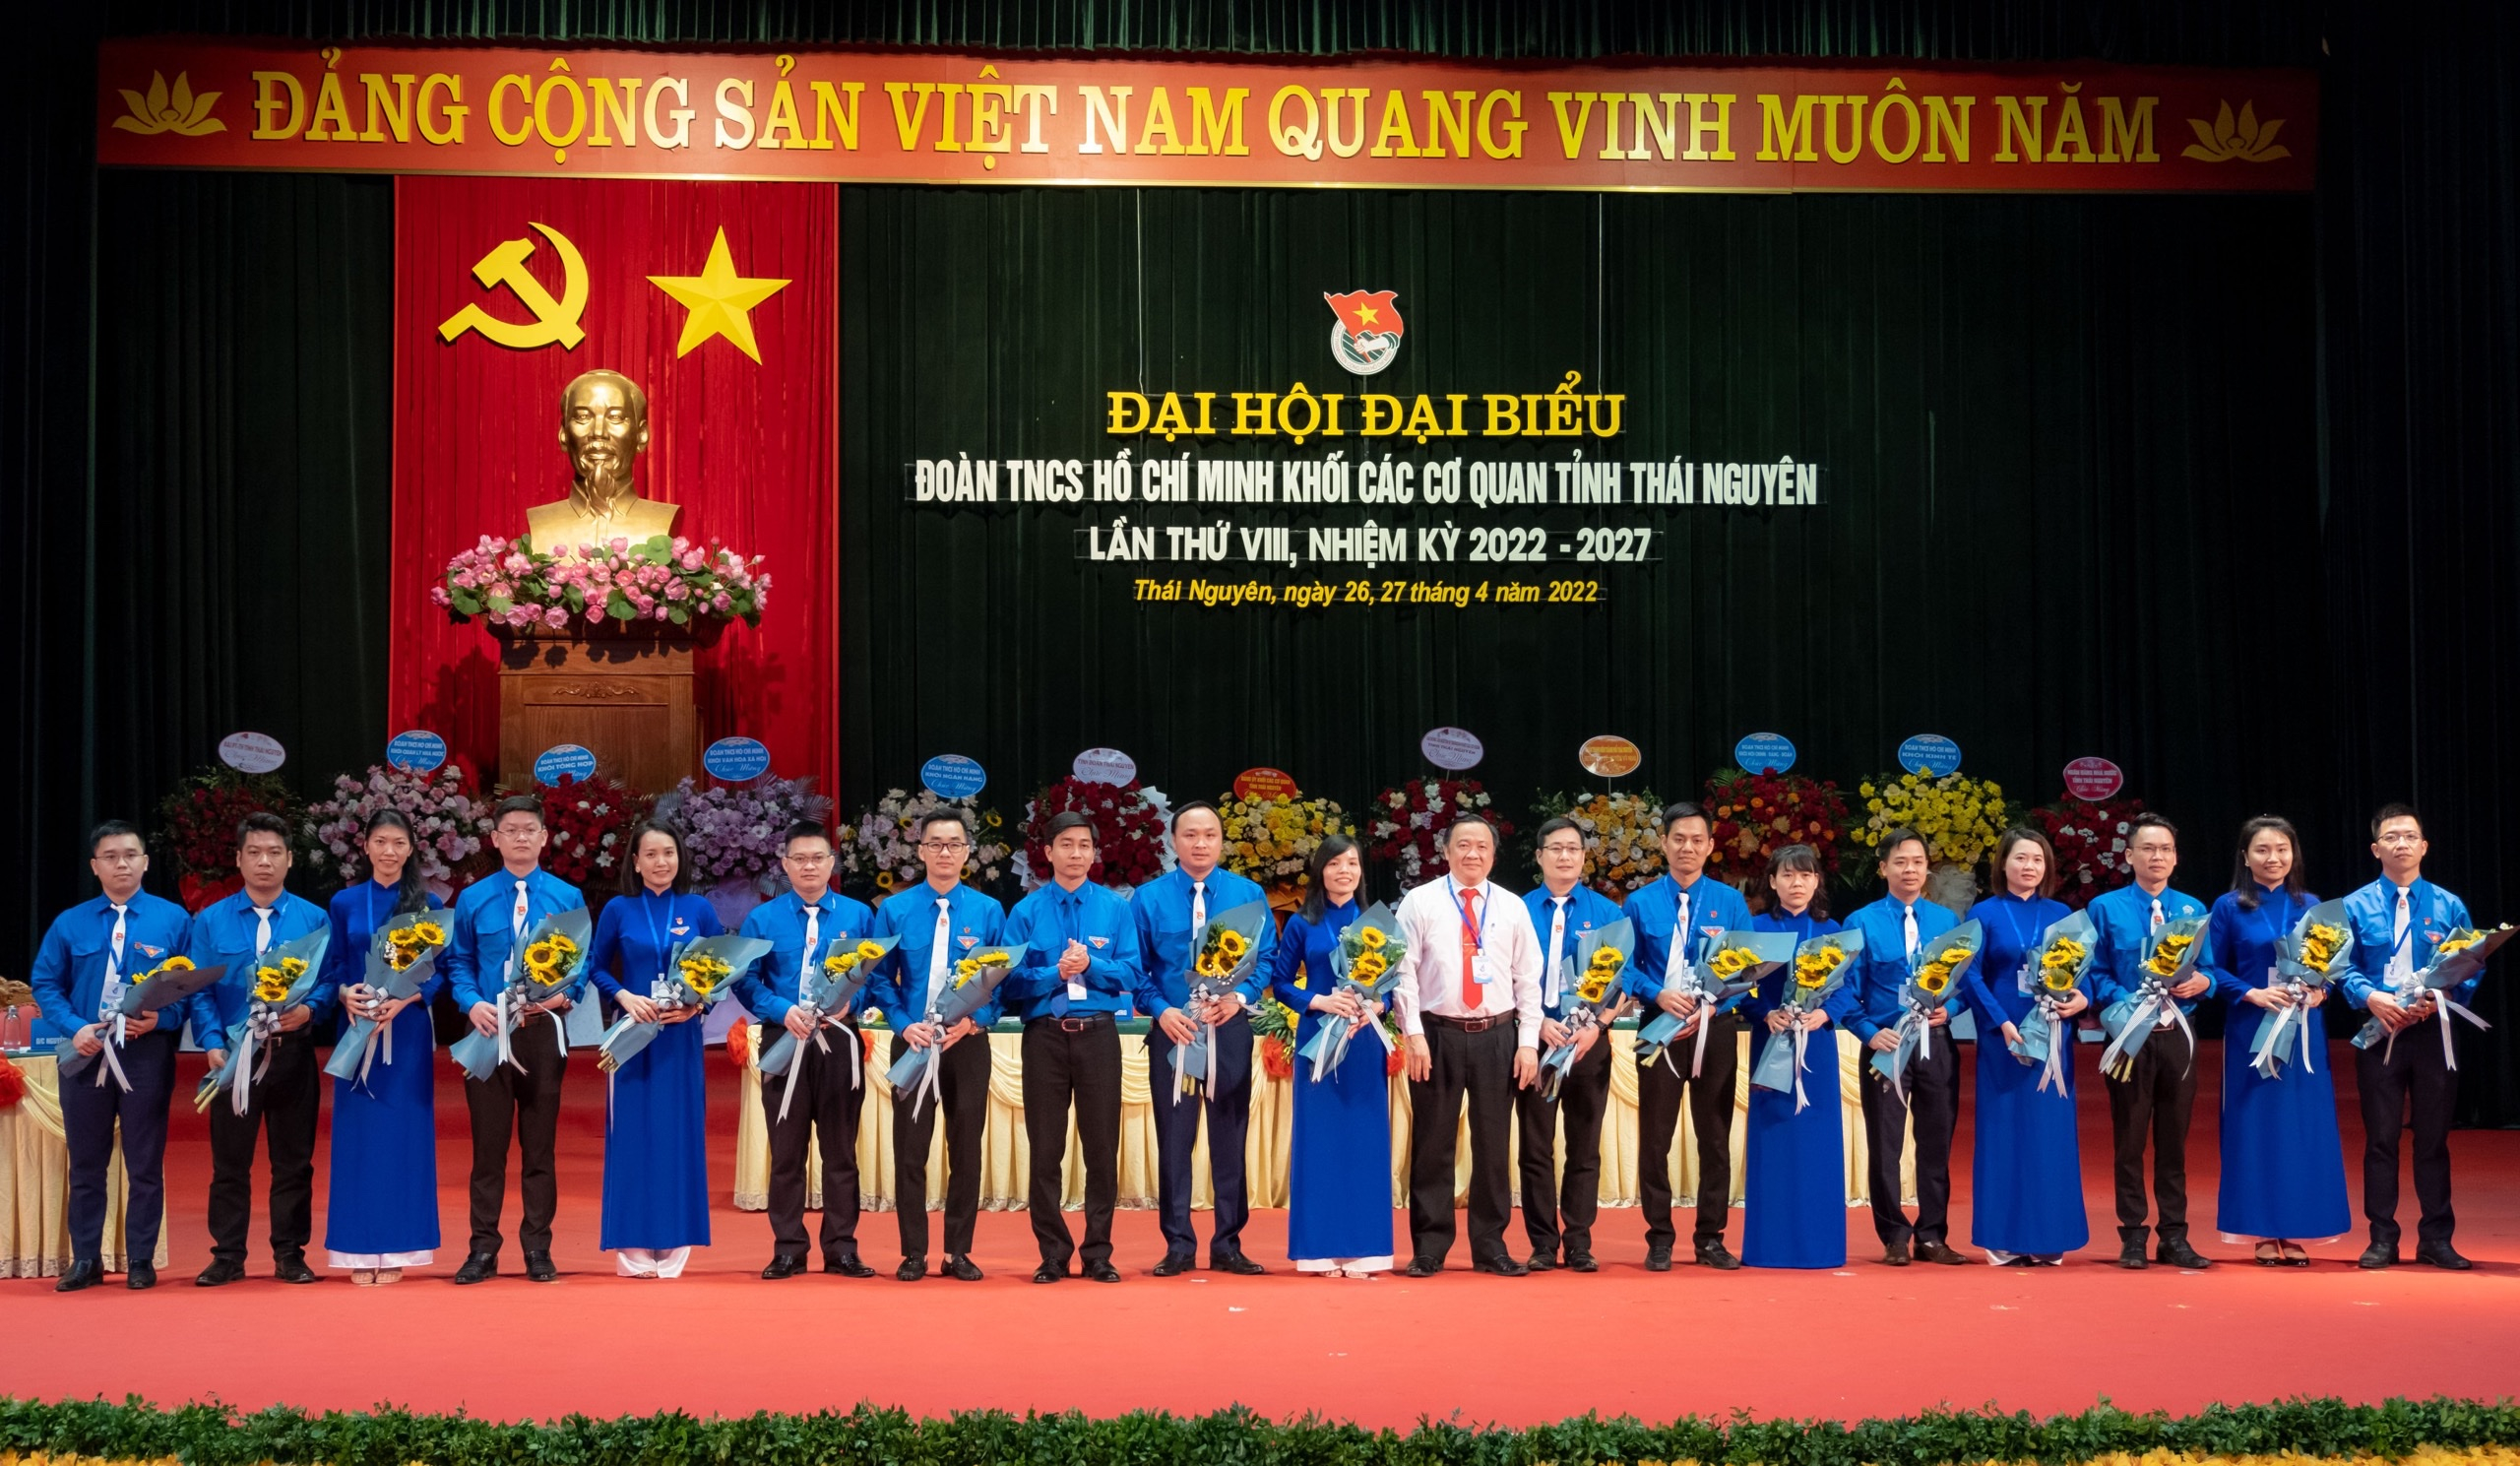 Đại hội Đại biểu Đoàn TNCS Hồ Chí Minh Khối các cơ quan tỉnh lần thứ VIII, nhiệm kỳ 2022-2027